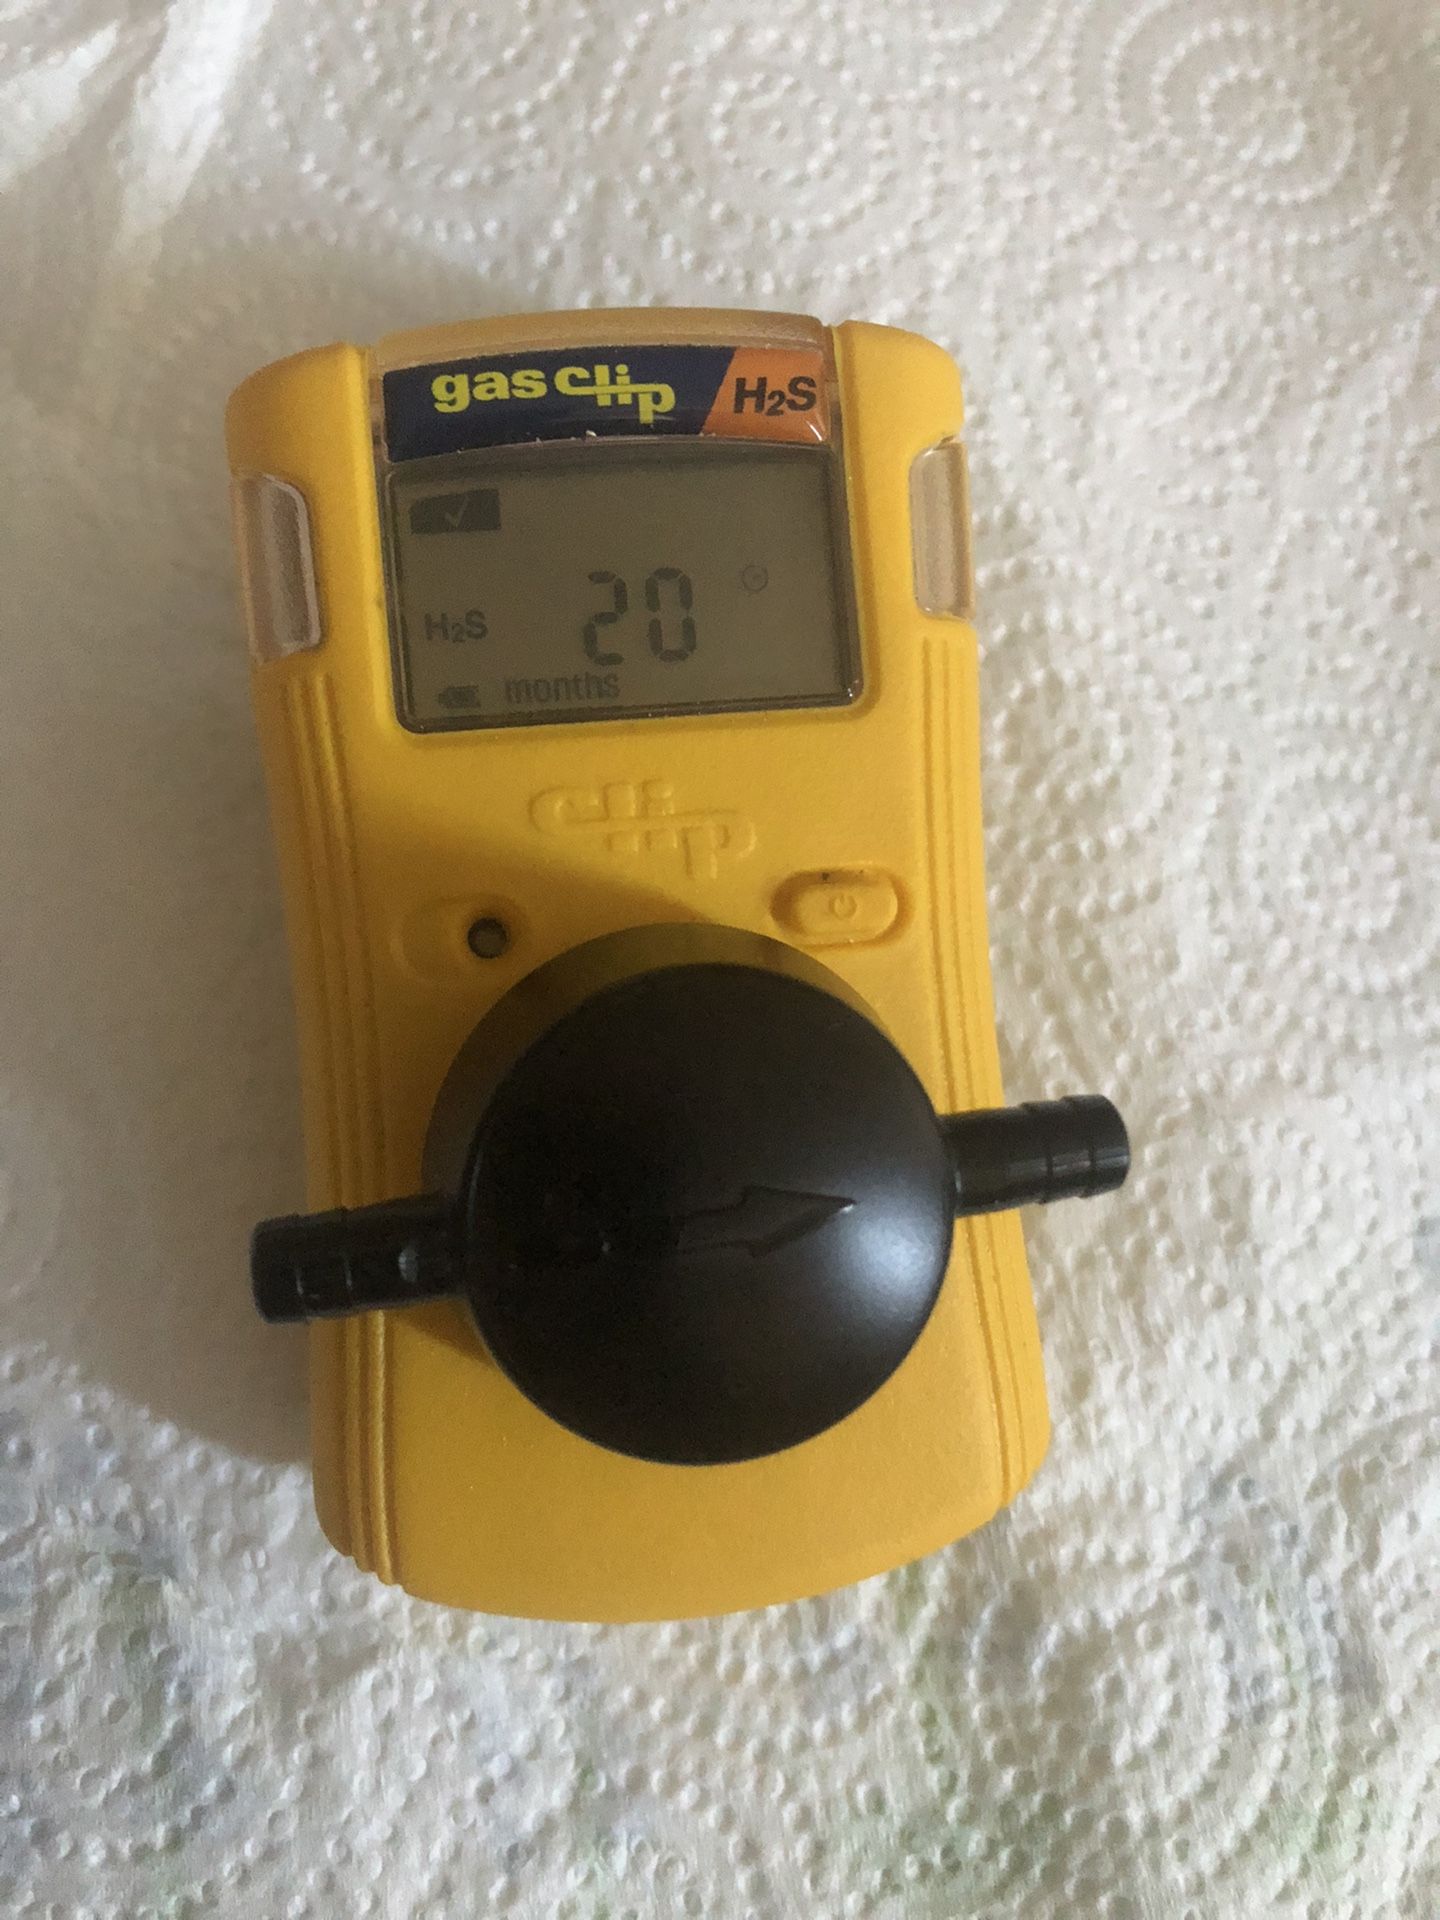 Gas Clip Monitor H2S